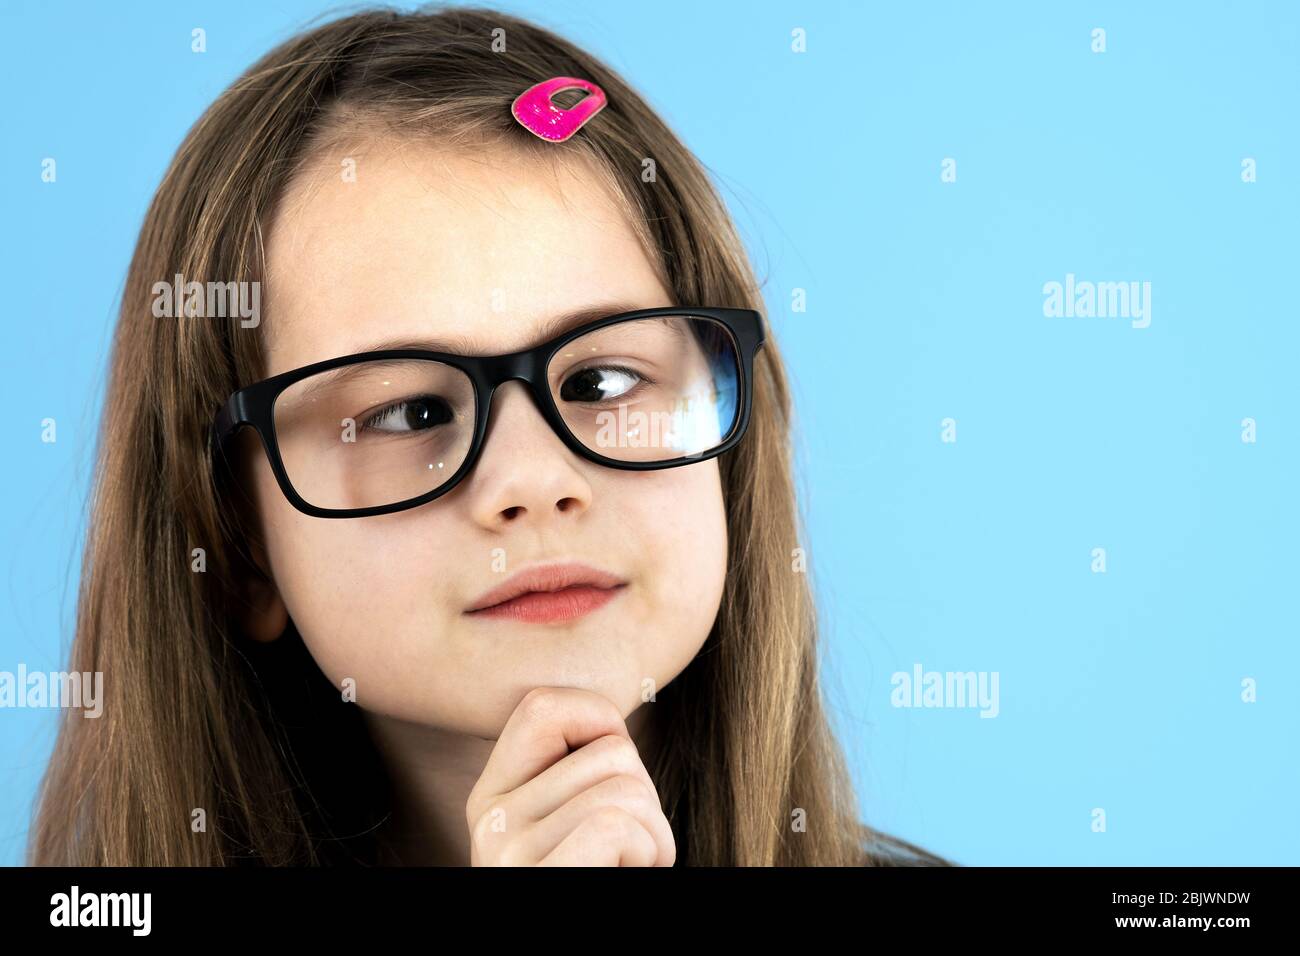 Cross eyed girl Stock Photo - Alamy